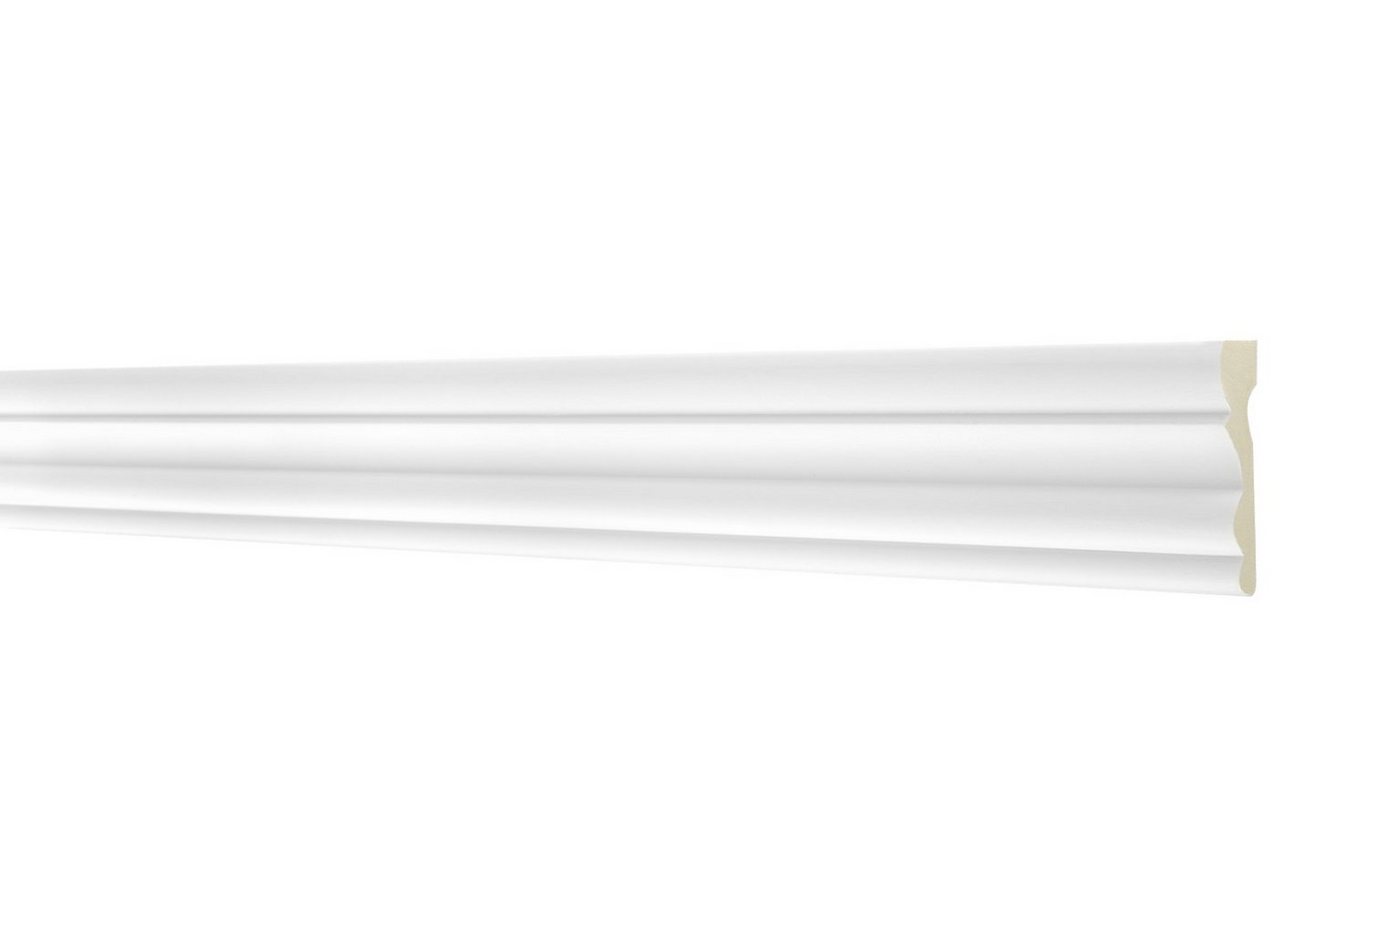 Hexim Perfect Stuckleiste AD 325, Flachleiste aus PU Serie 1 - Stuckleiste glatt, weißes Zierprofil, hart & stoßfest - Wandleiste vorgrundiert von Hexim Perfect